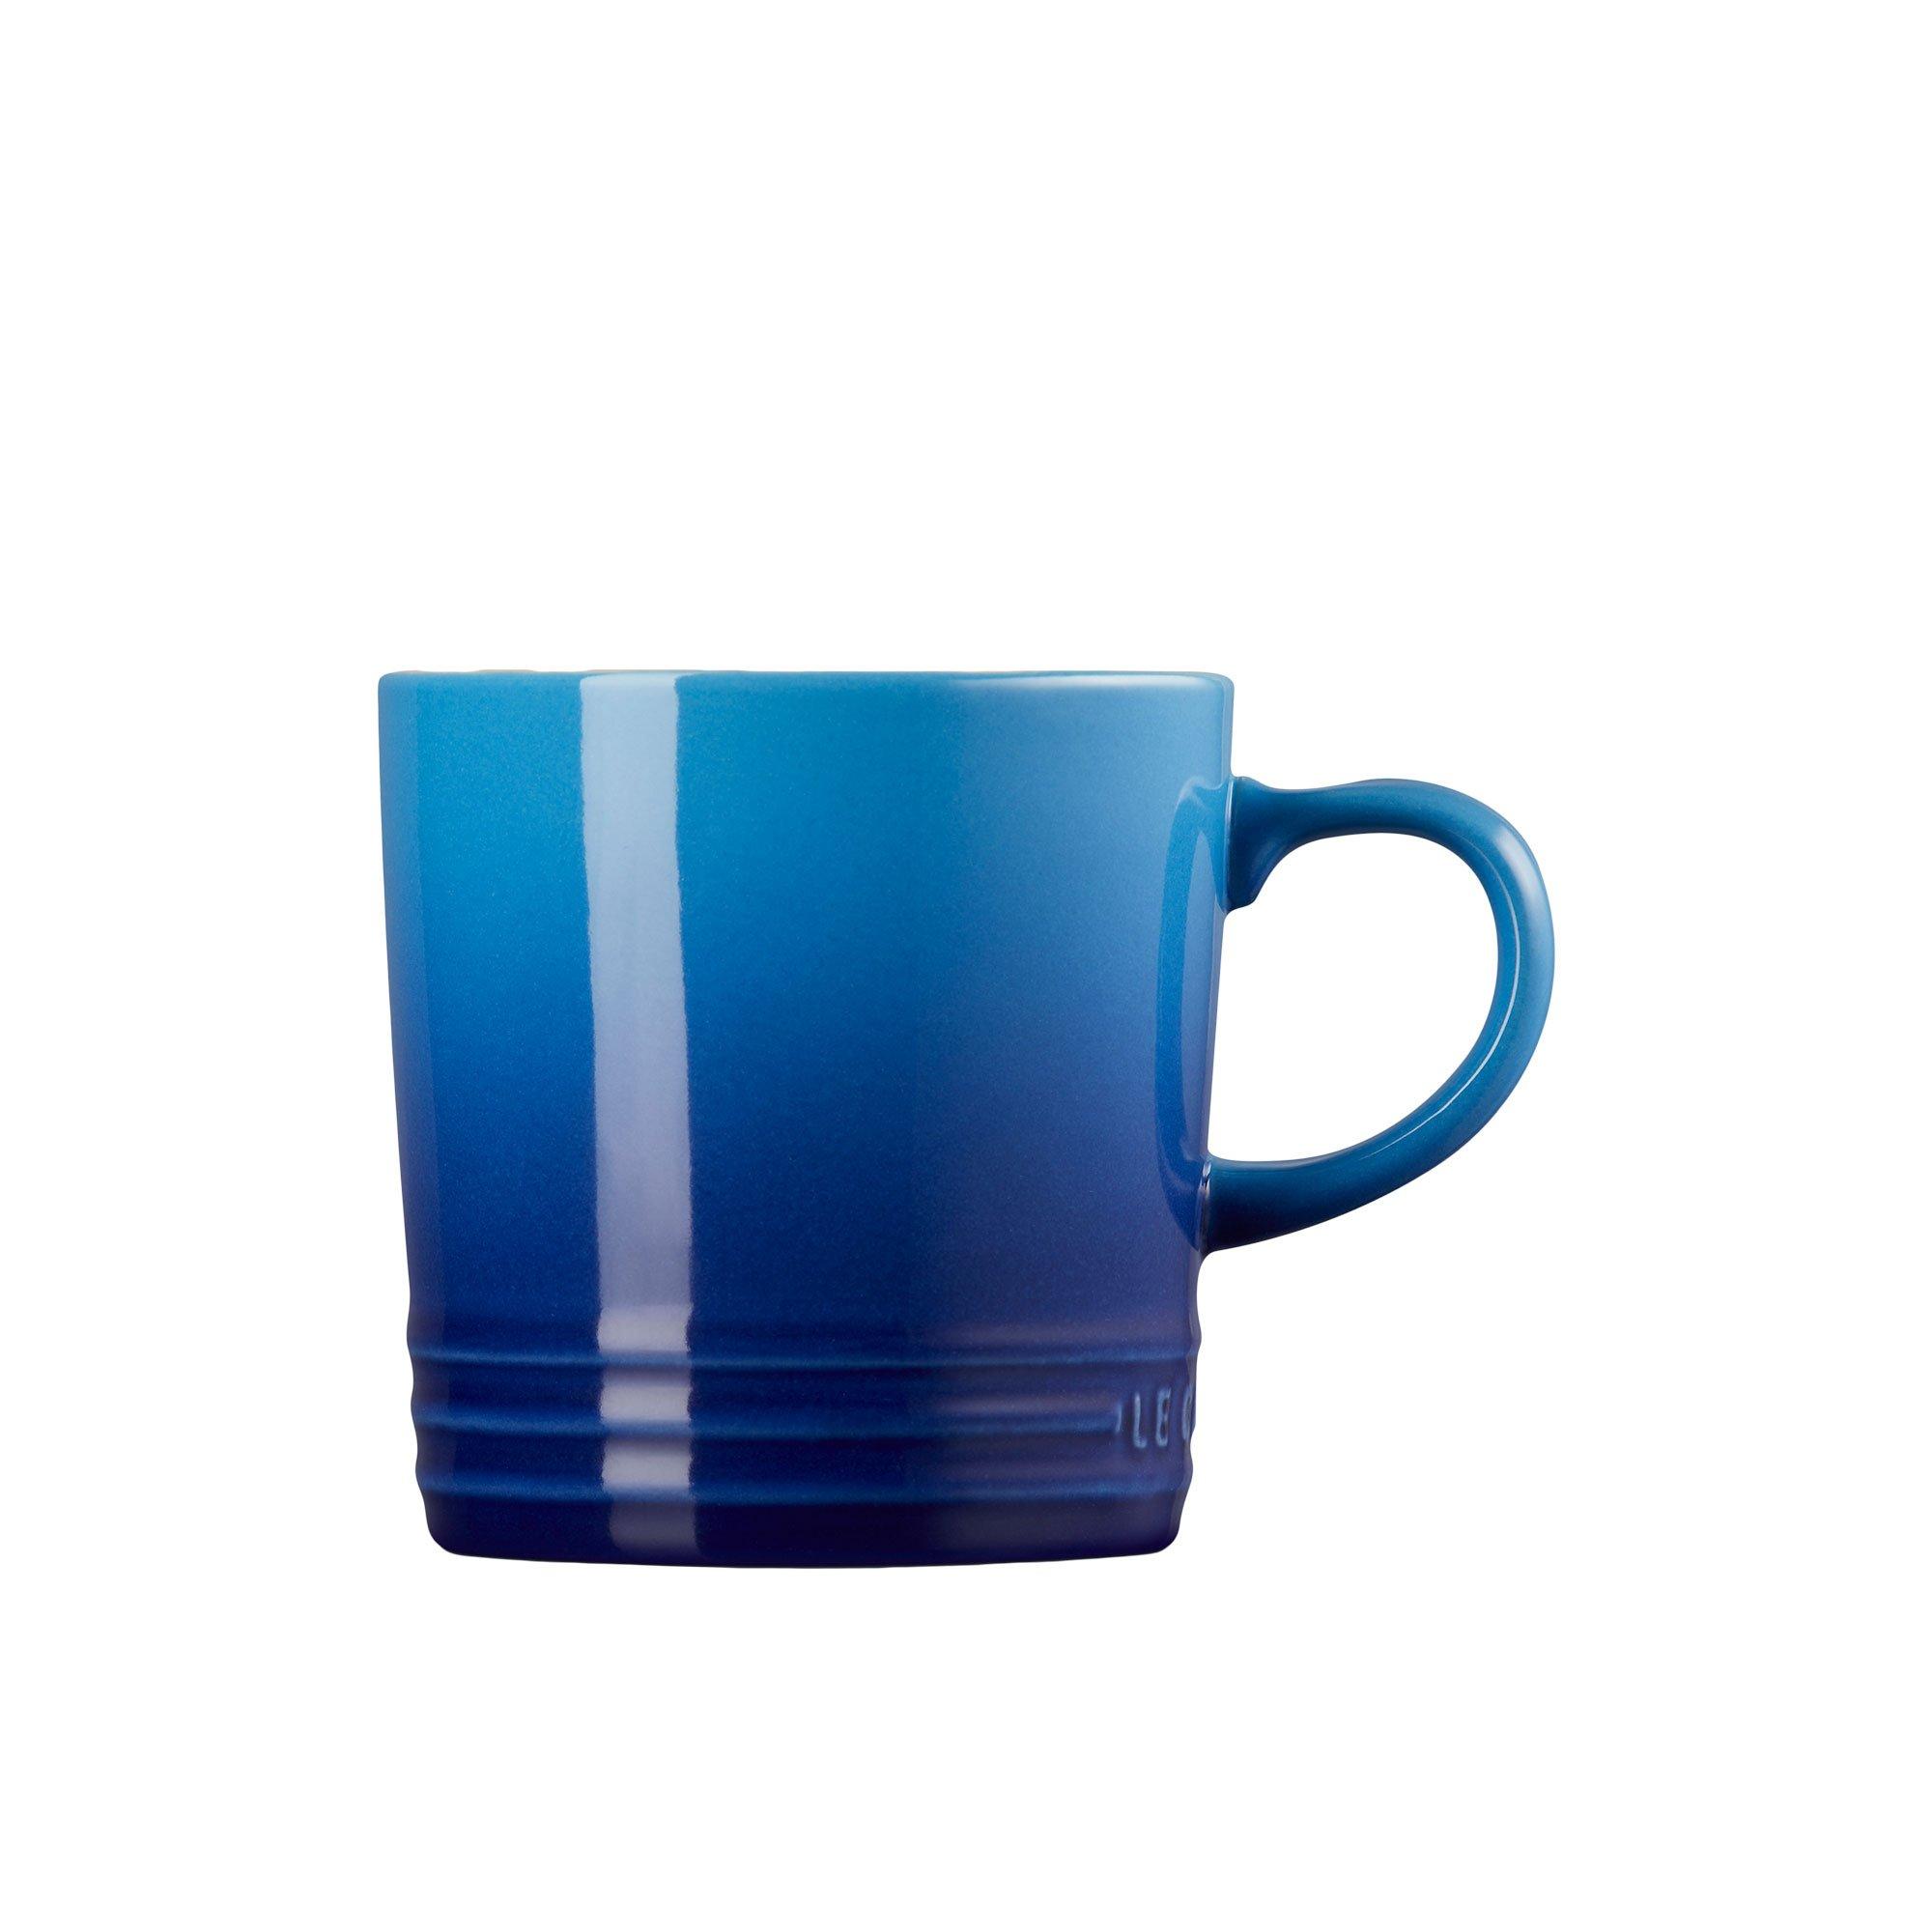 Le Creuset Stoneware Mug 350ml Azure Blue Image 3